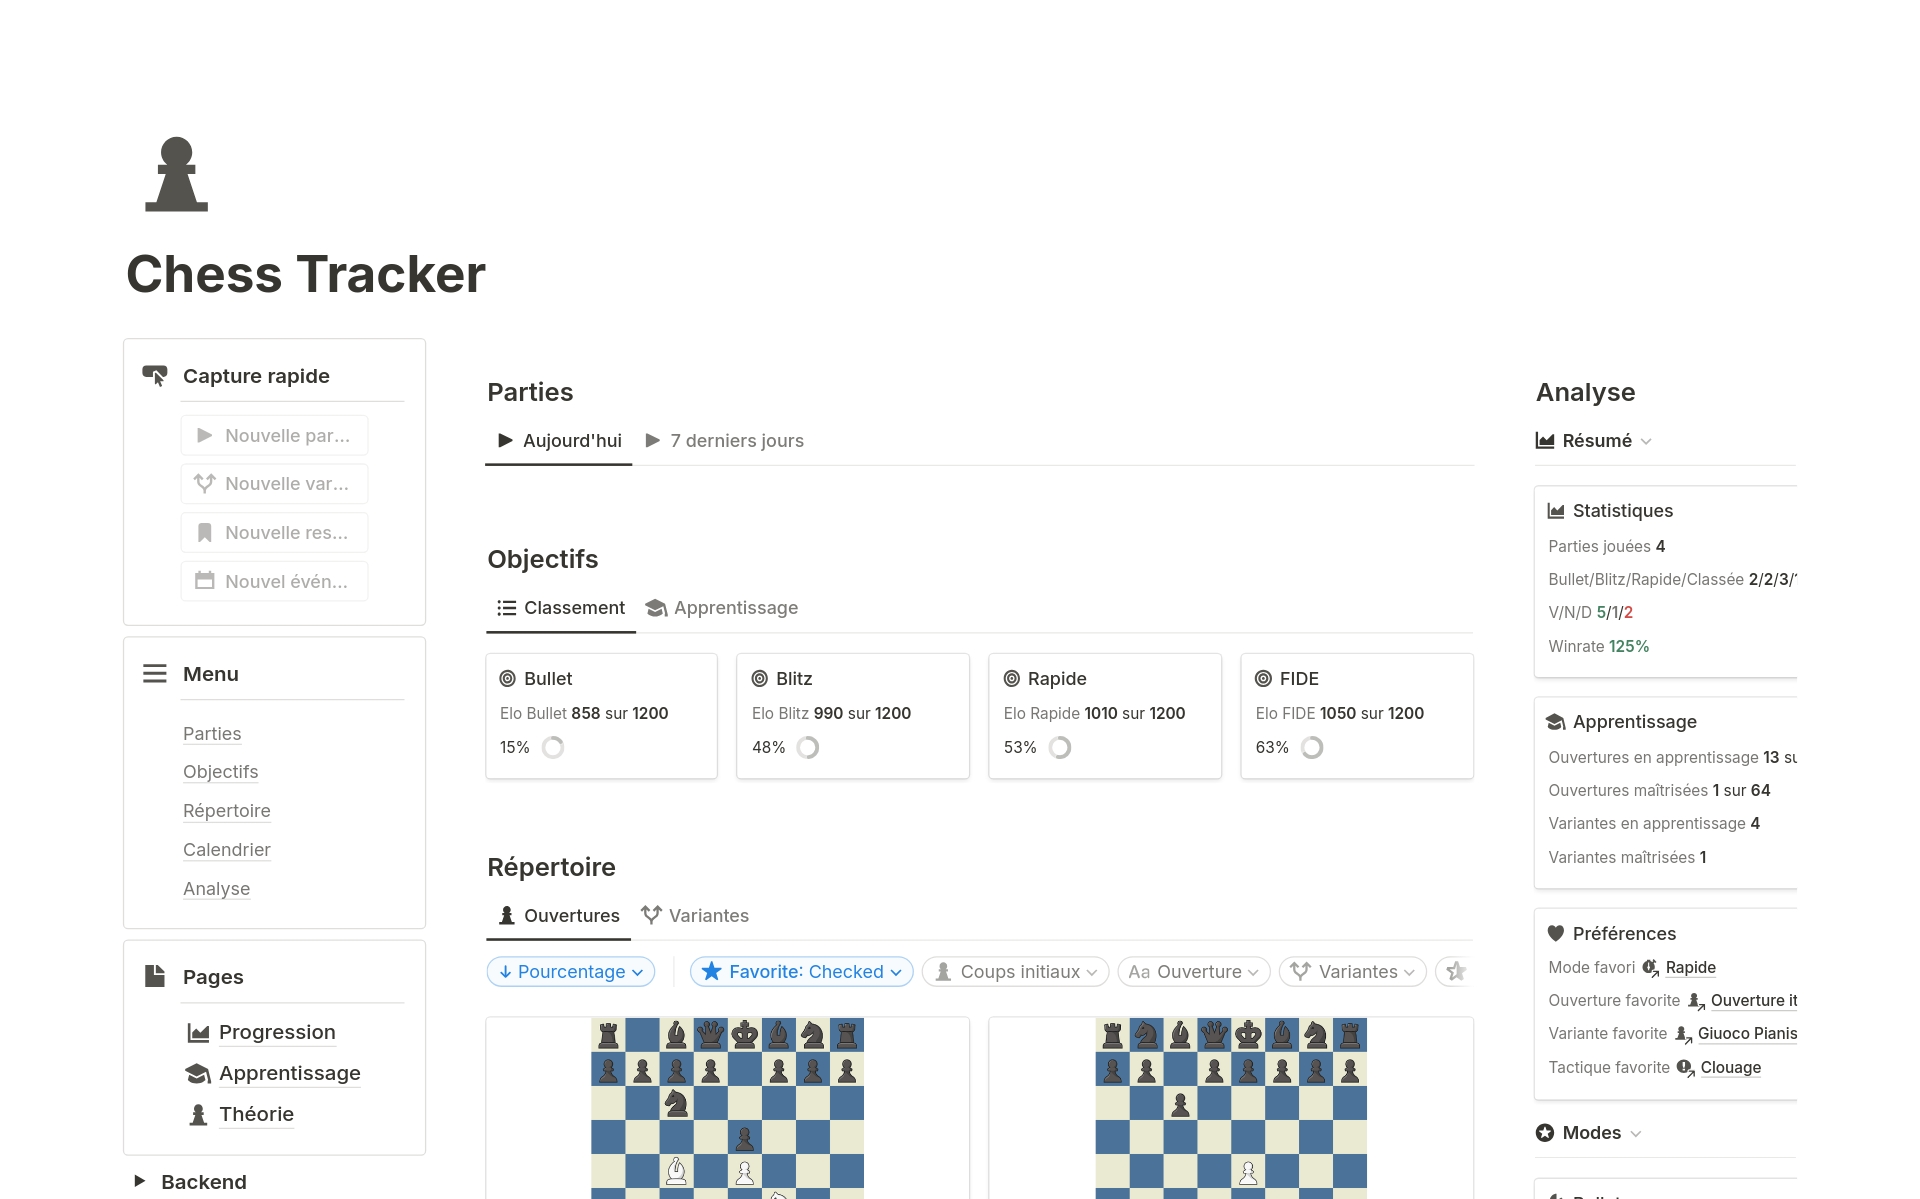 Dominez vos adversaires aux échecs avec Chess Tracker. Ce modèle vous aide à améliorer votre jeu d'échecs, suivre votre progression et parfaitement optimiser votre apprentissage.